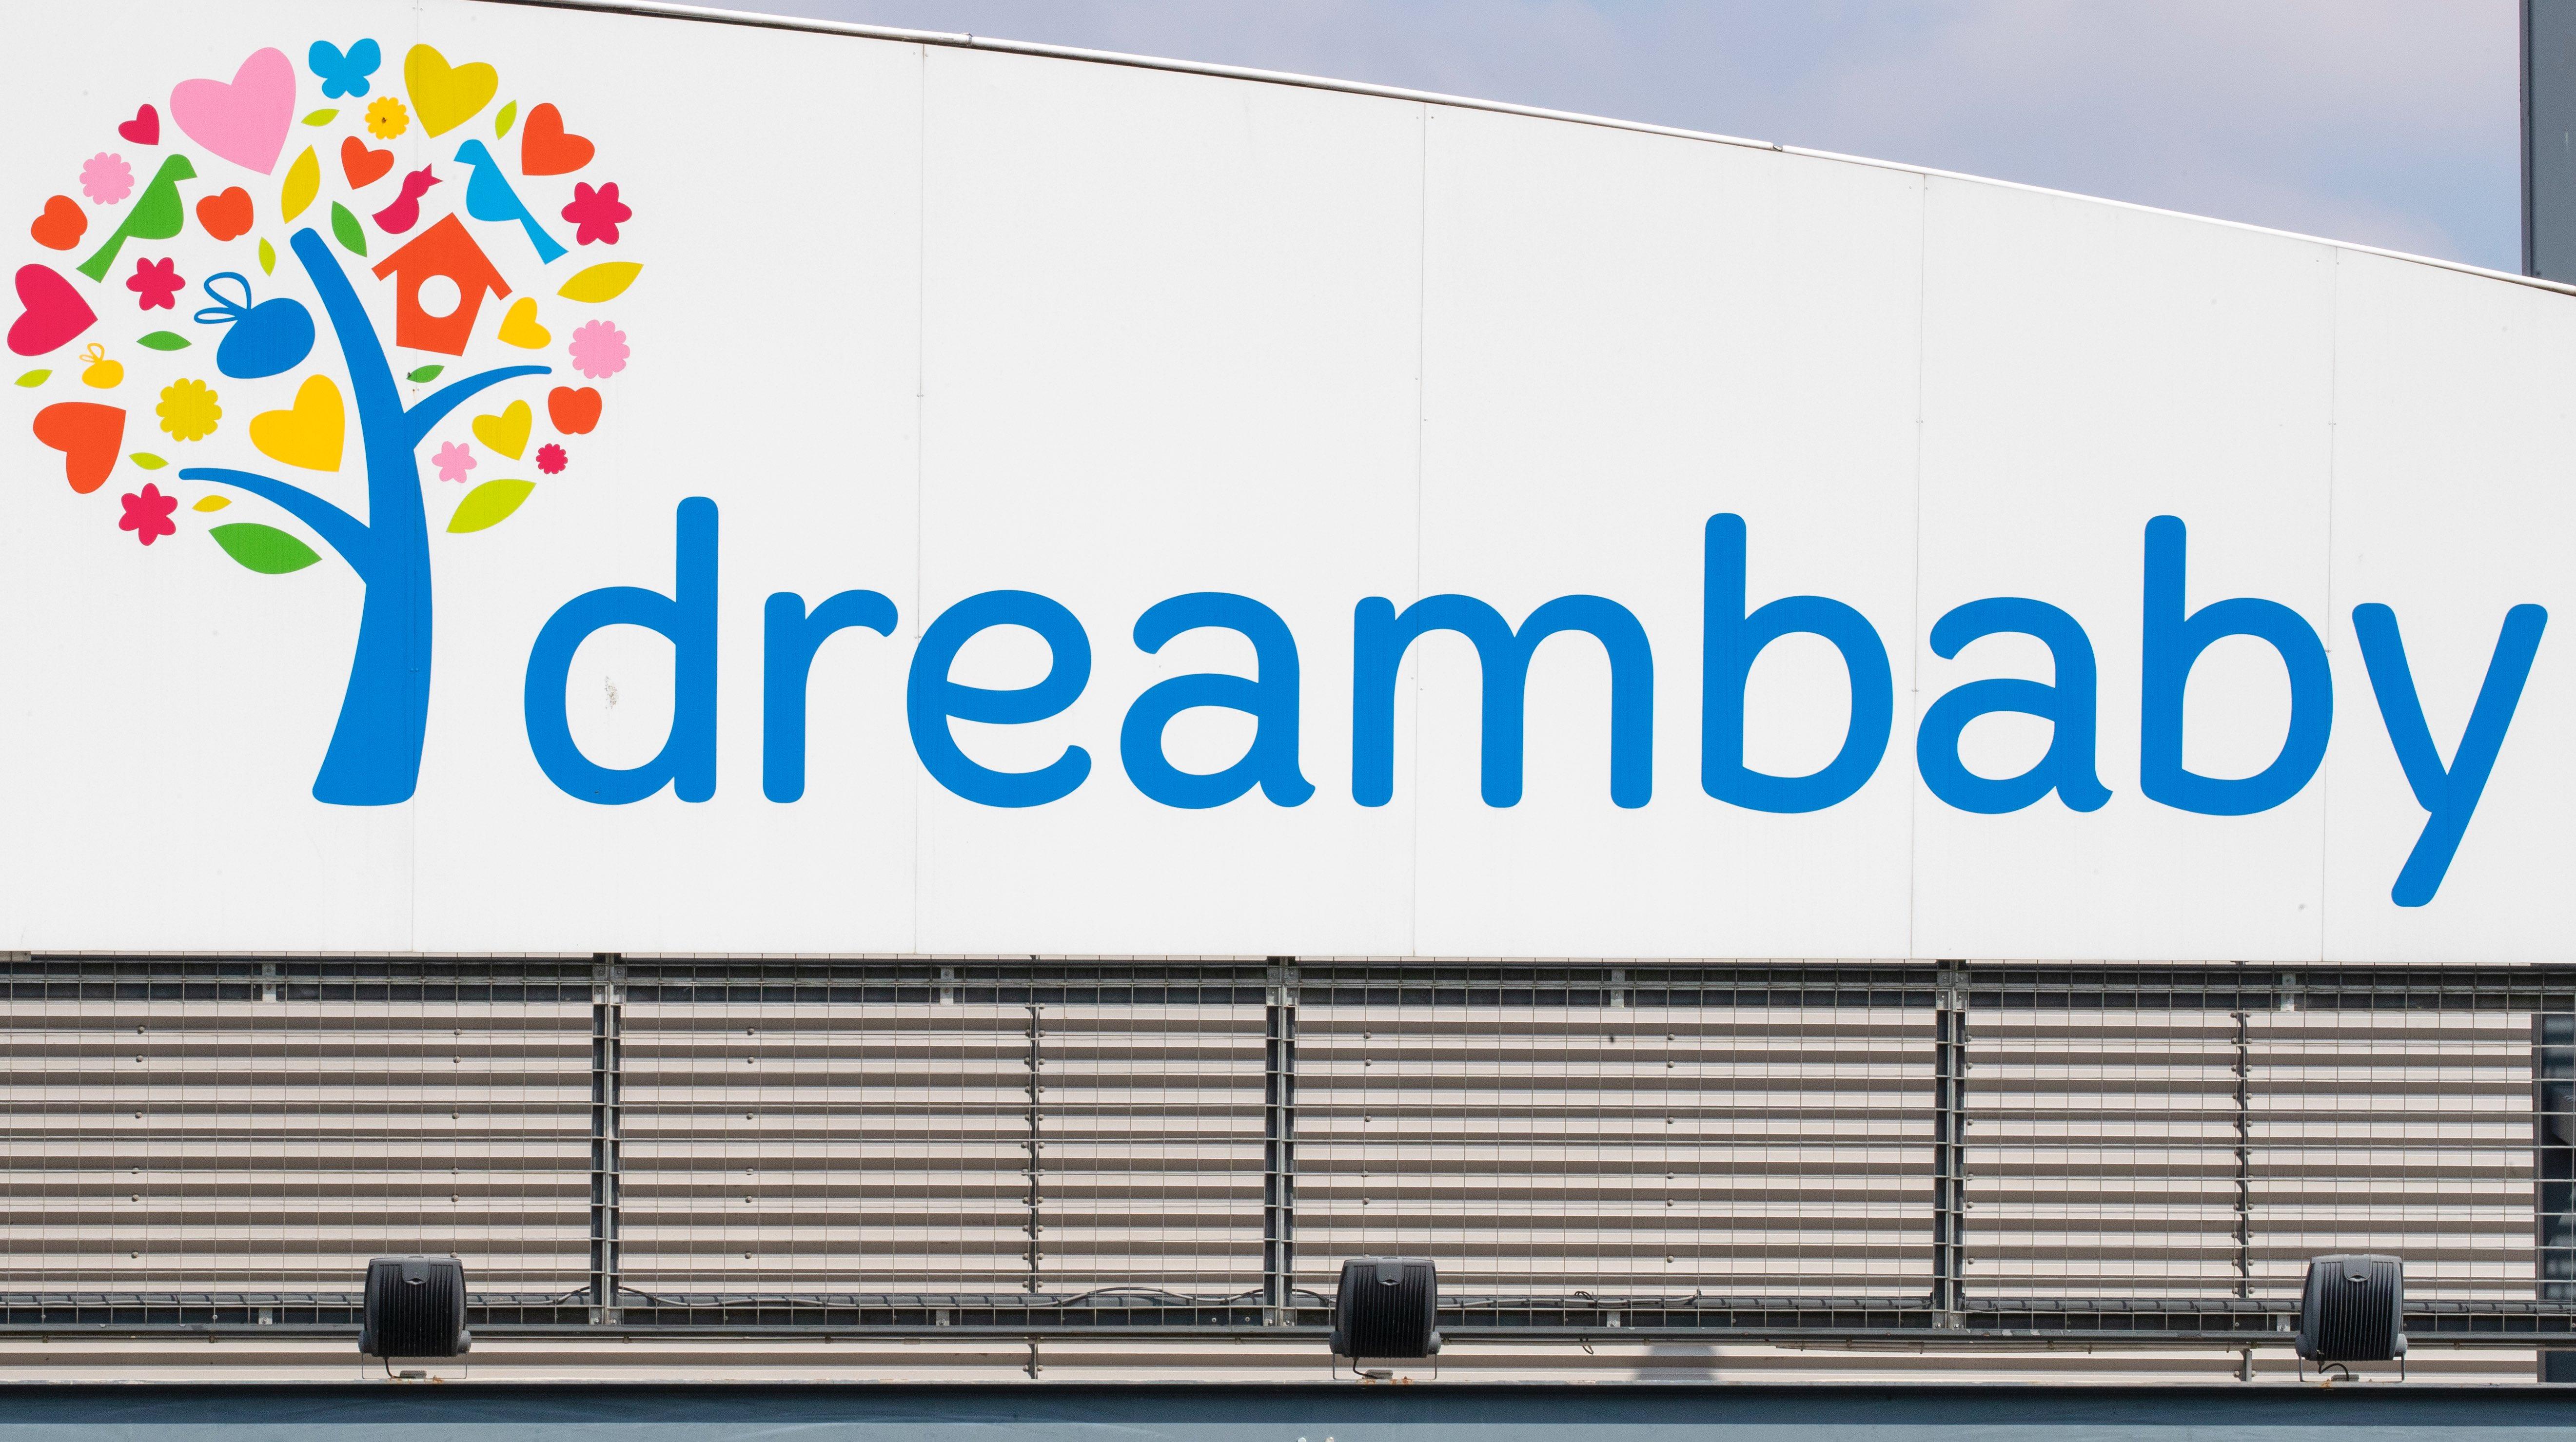 Le groupe Colruyt vend ses 27 magasins Dreambaby à Super Bazar